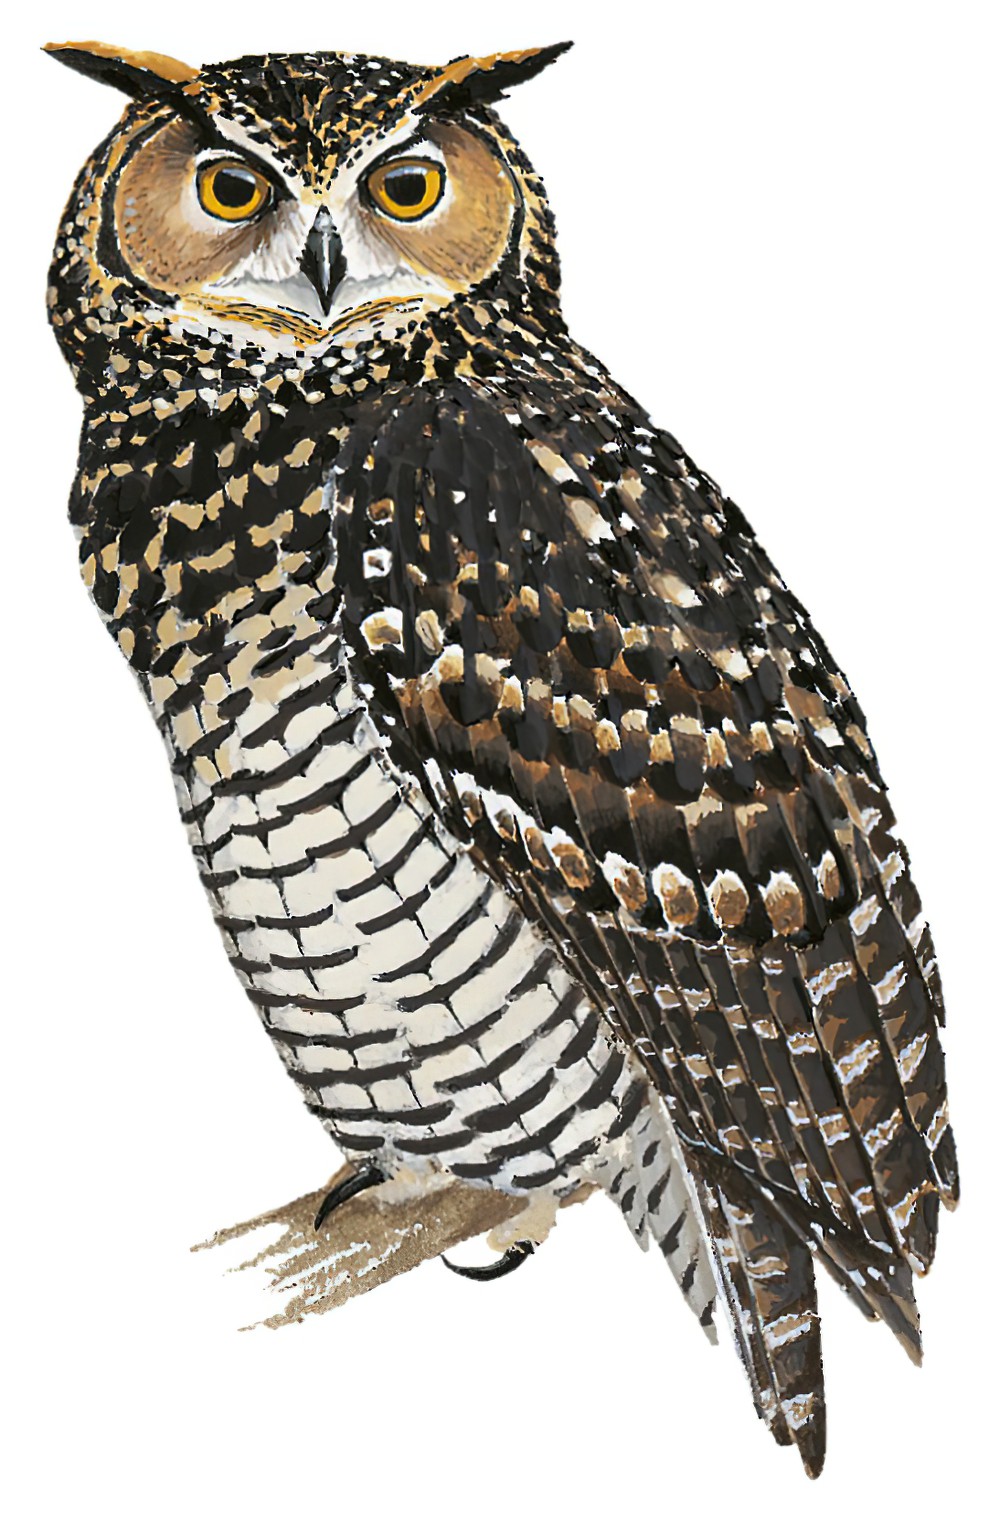 Cape Eagle-Owl / Bubo capensis